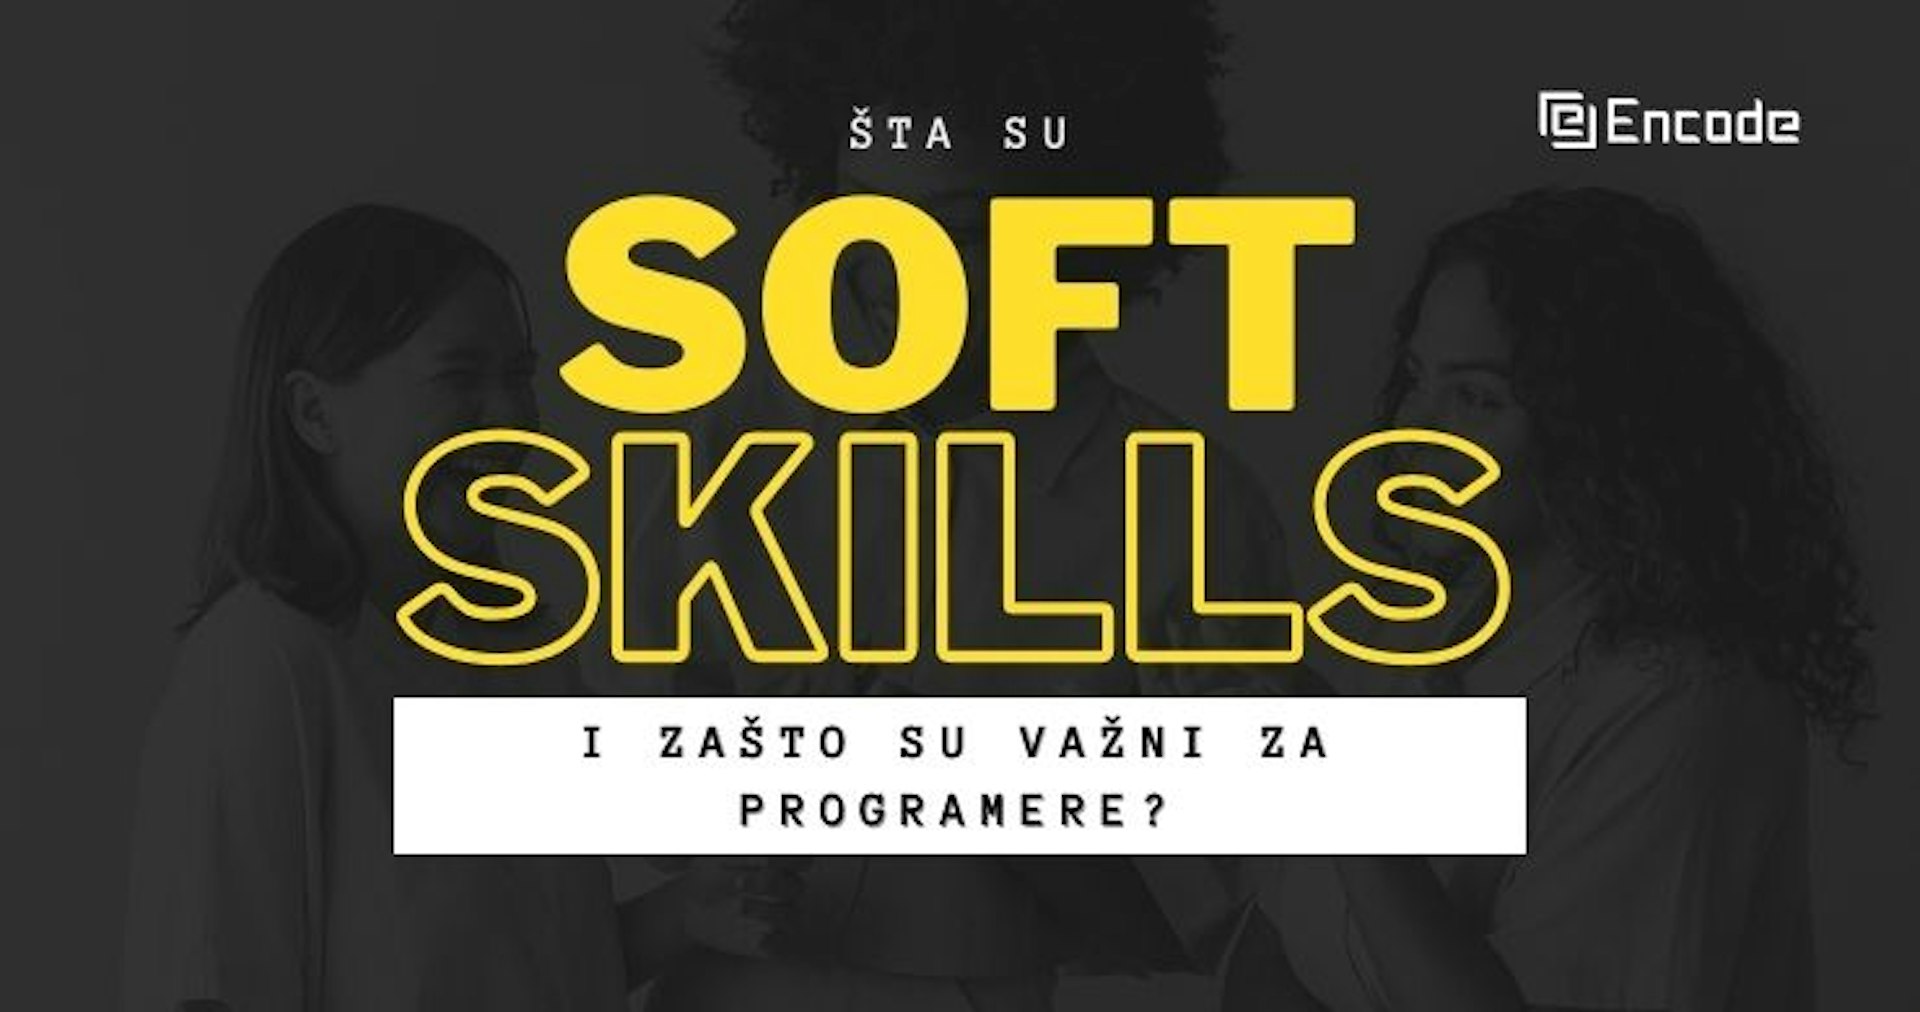 Šta su soft skills i zašto su važni za programere?